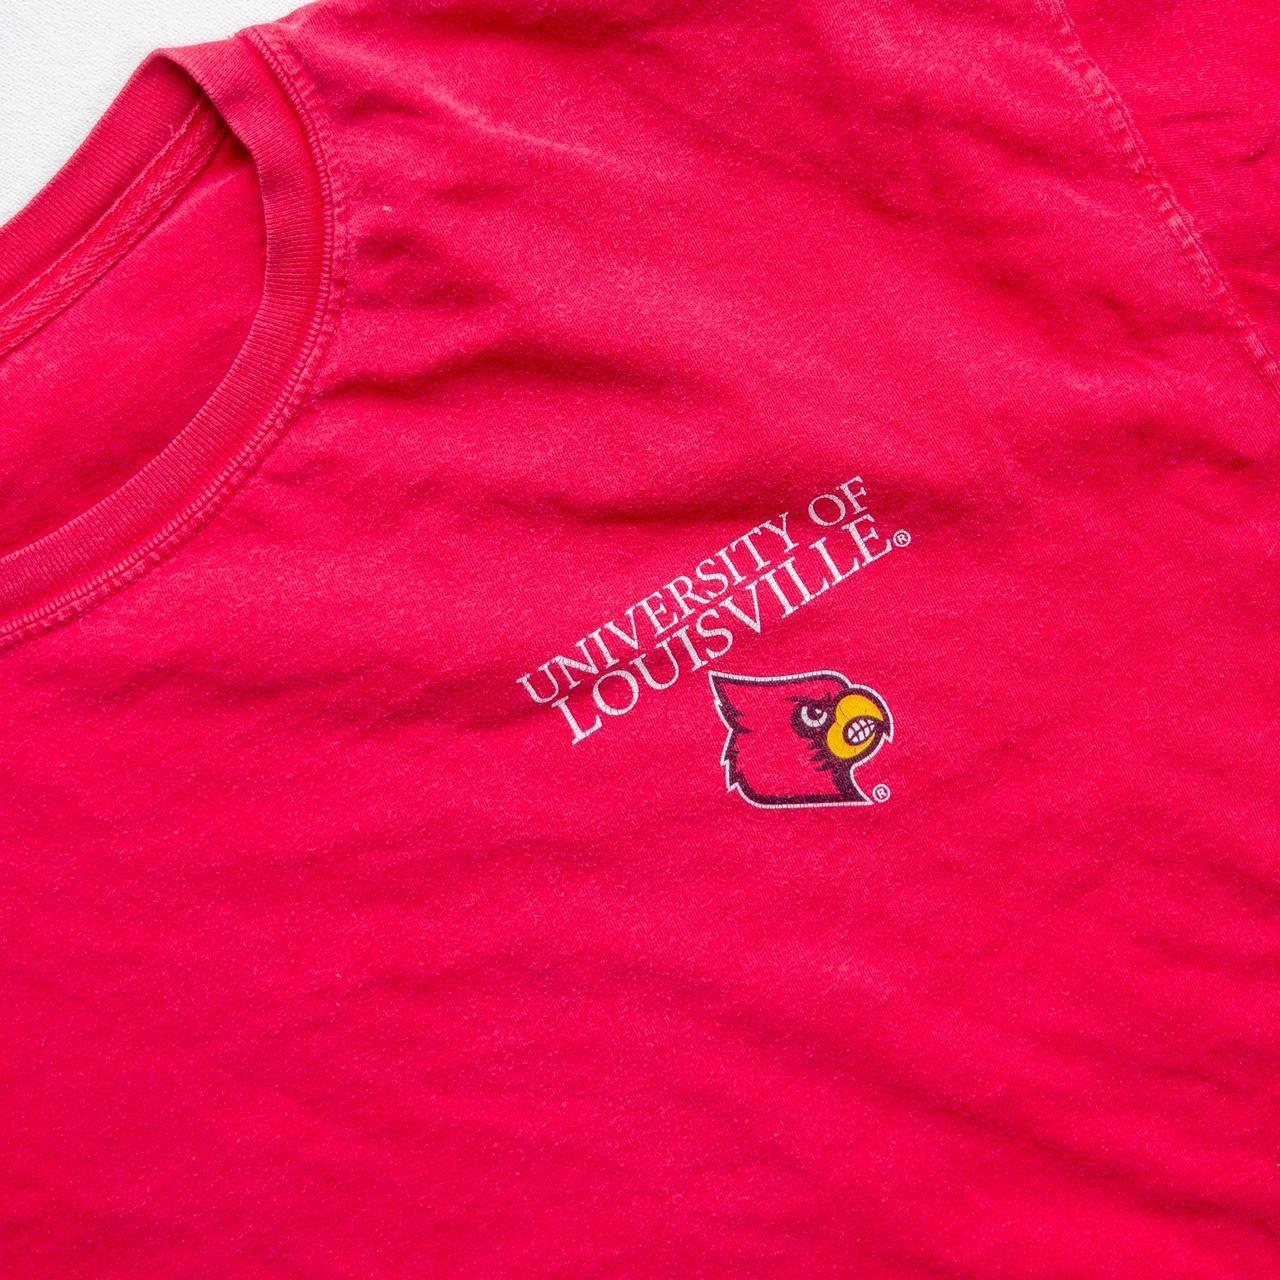 University of Louisville Volleyball shirt. 9/10 - Depop